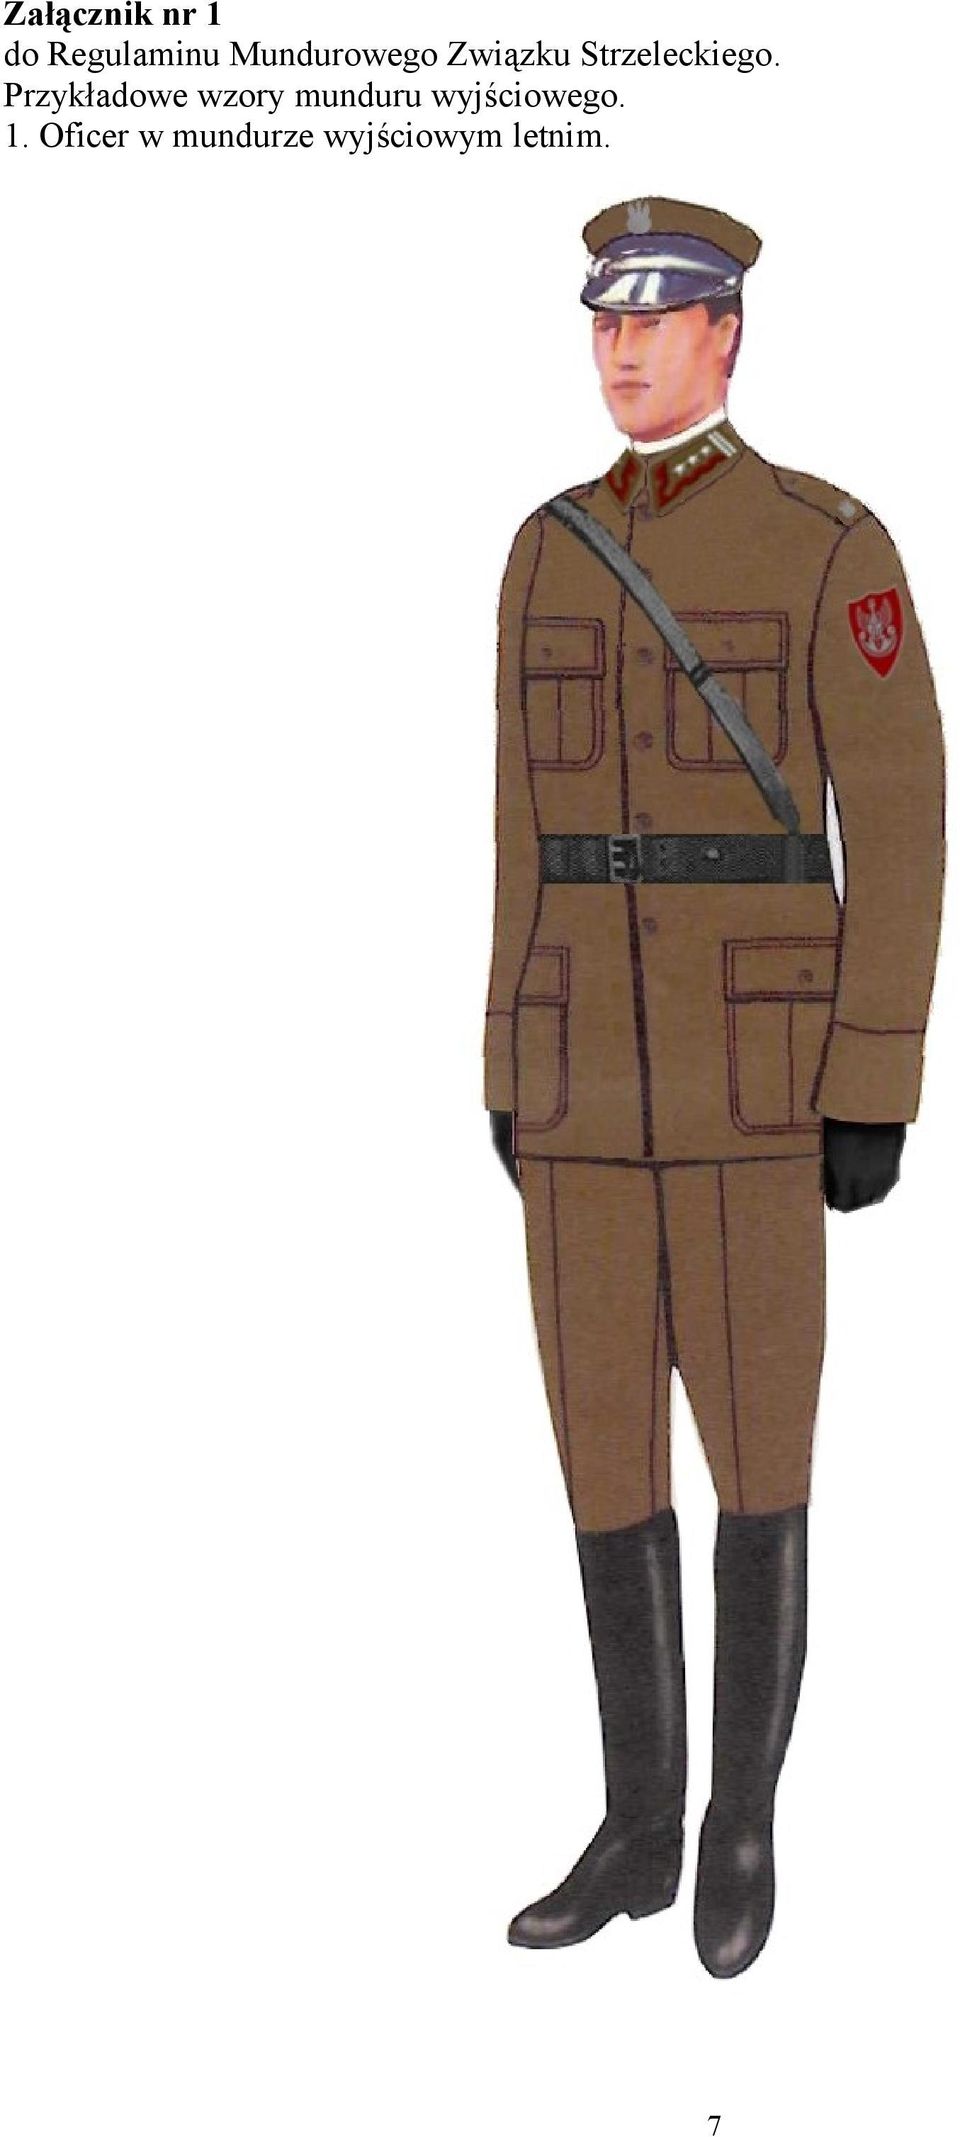 Przykładowe wzory munduru